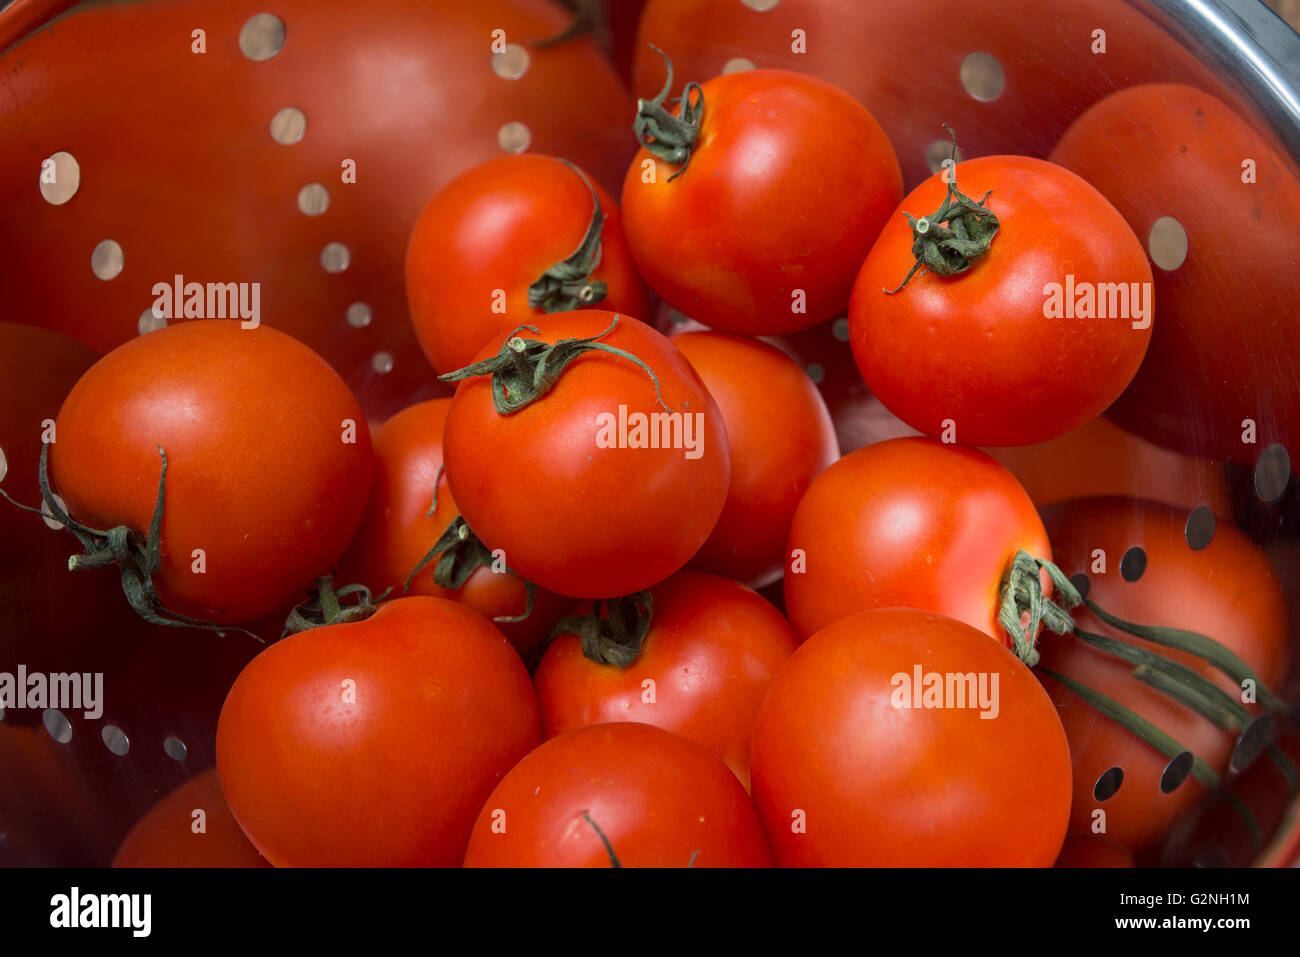 Tomatos, close up Stock Photo